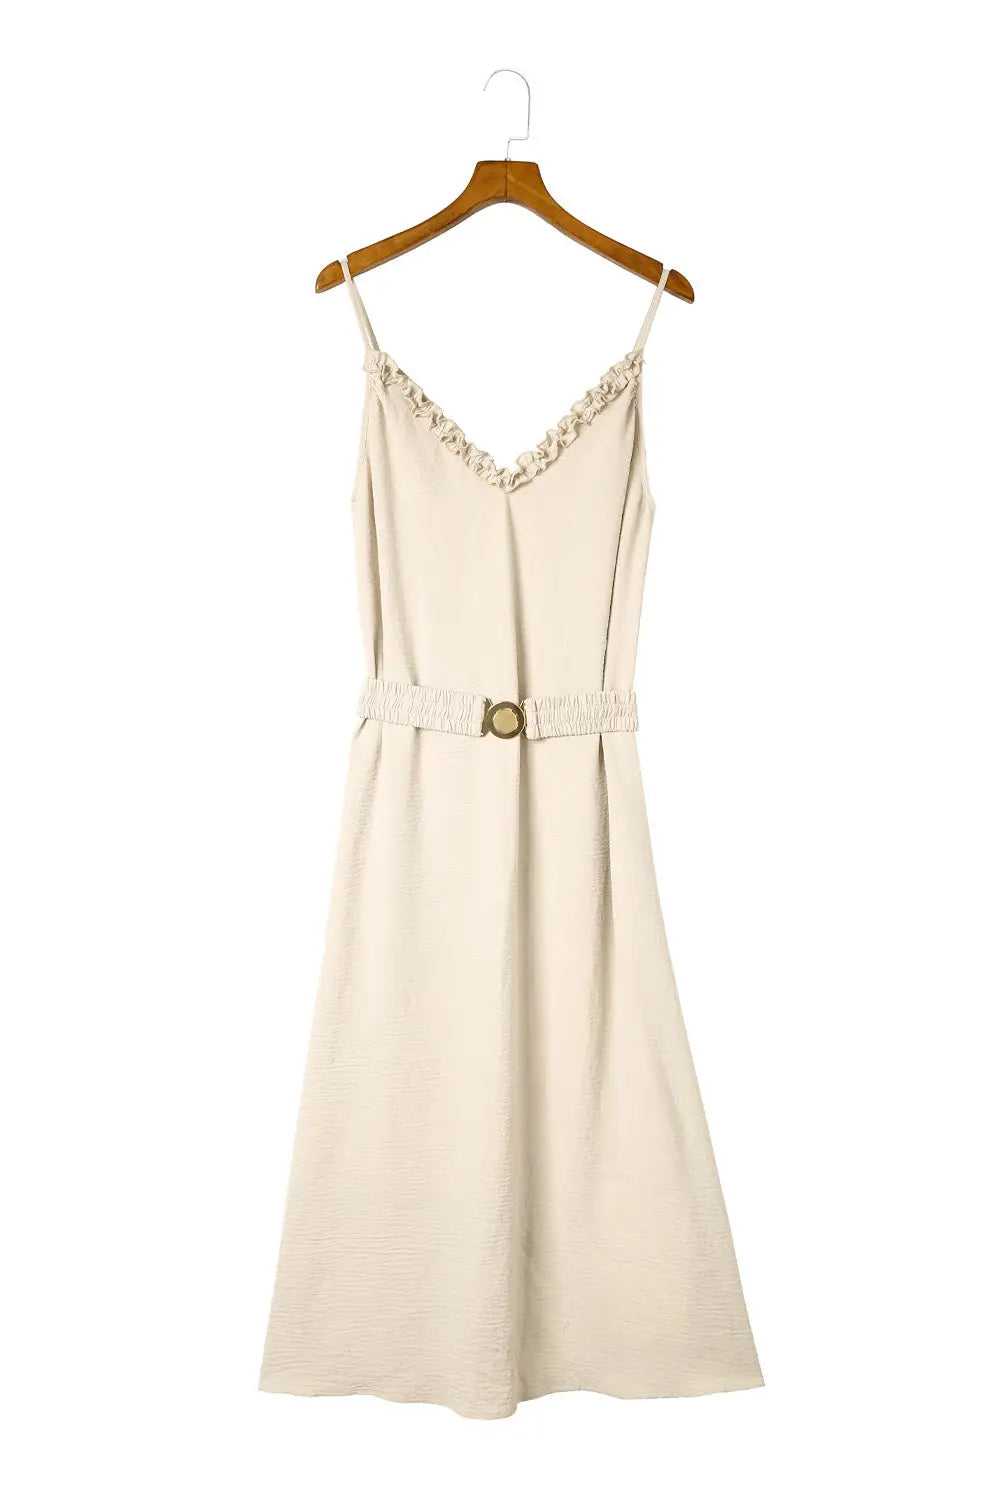 Apricot v neck sleeveless maxi dress with elastic belt -